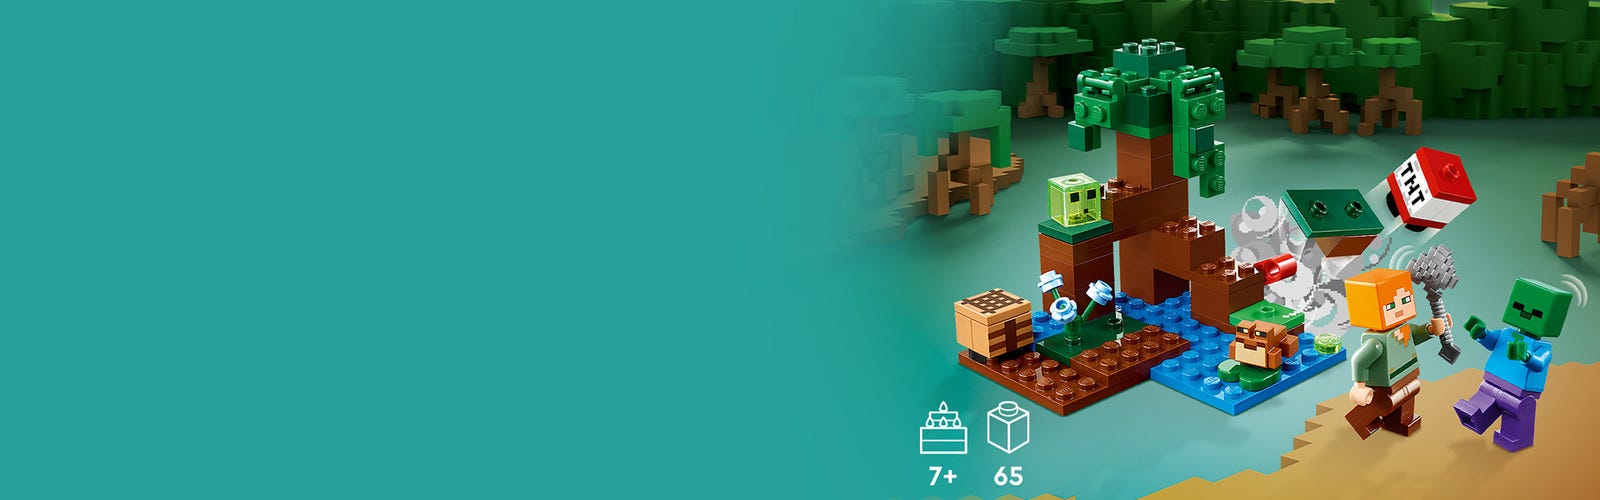 Lego®minecraft™ 21240 - aventures dans le marais